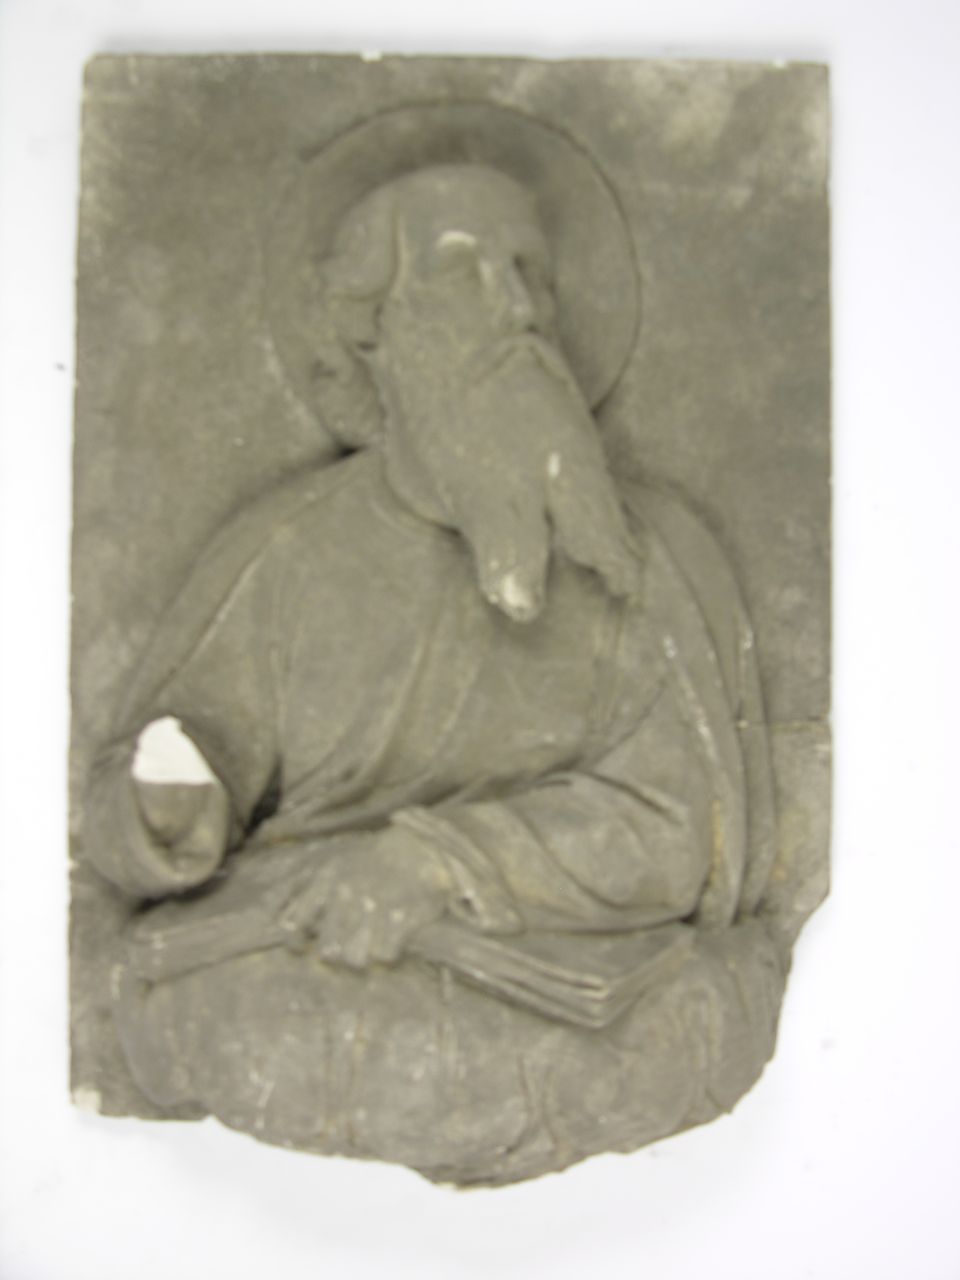 Apostel (Historisches Museum der Pfalz, Speyer CC BY)